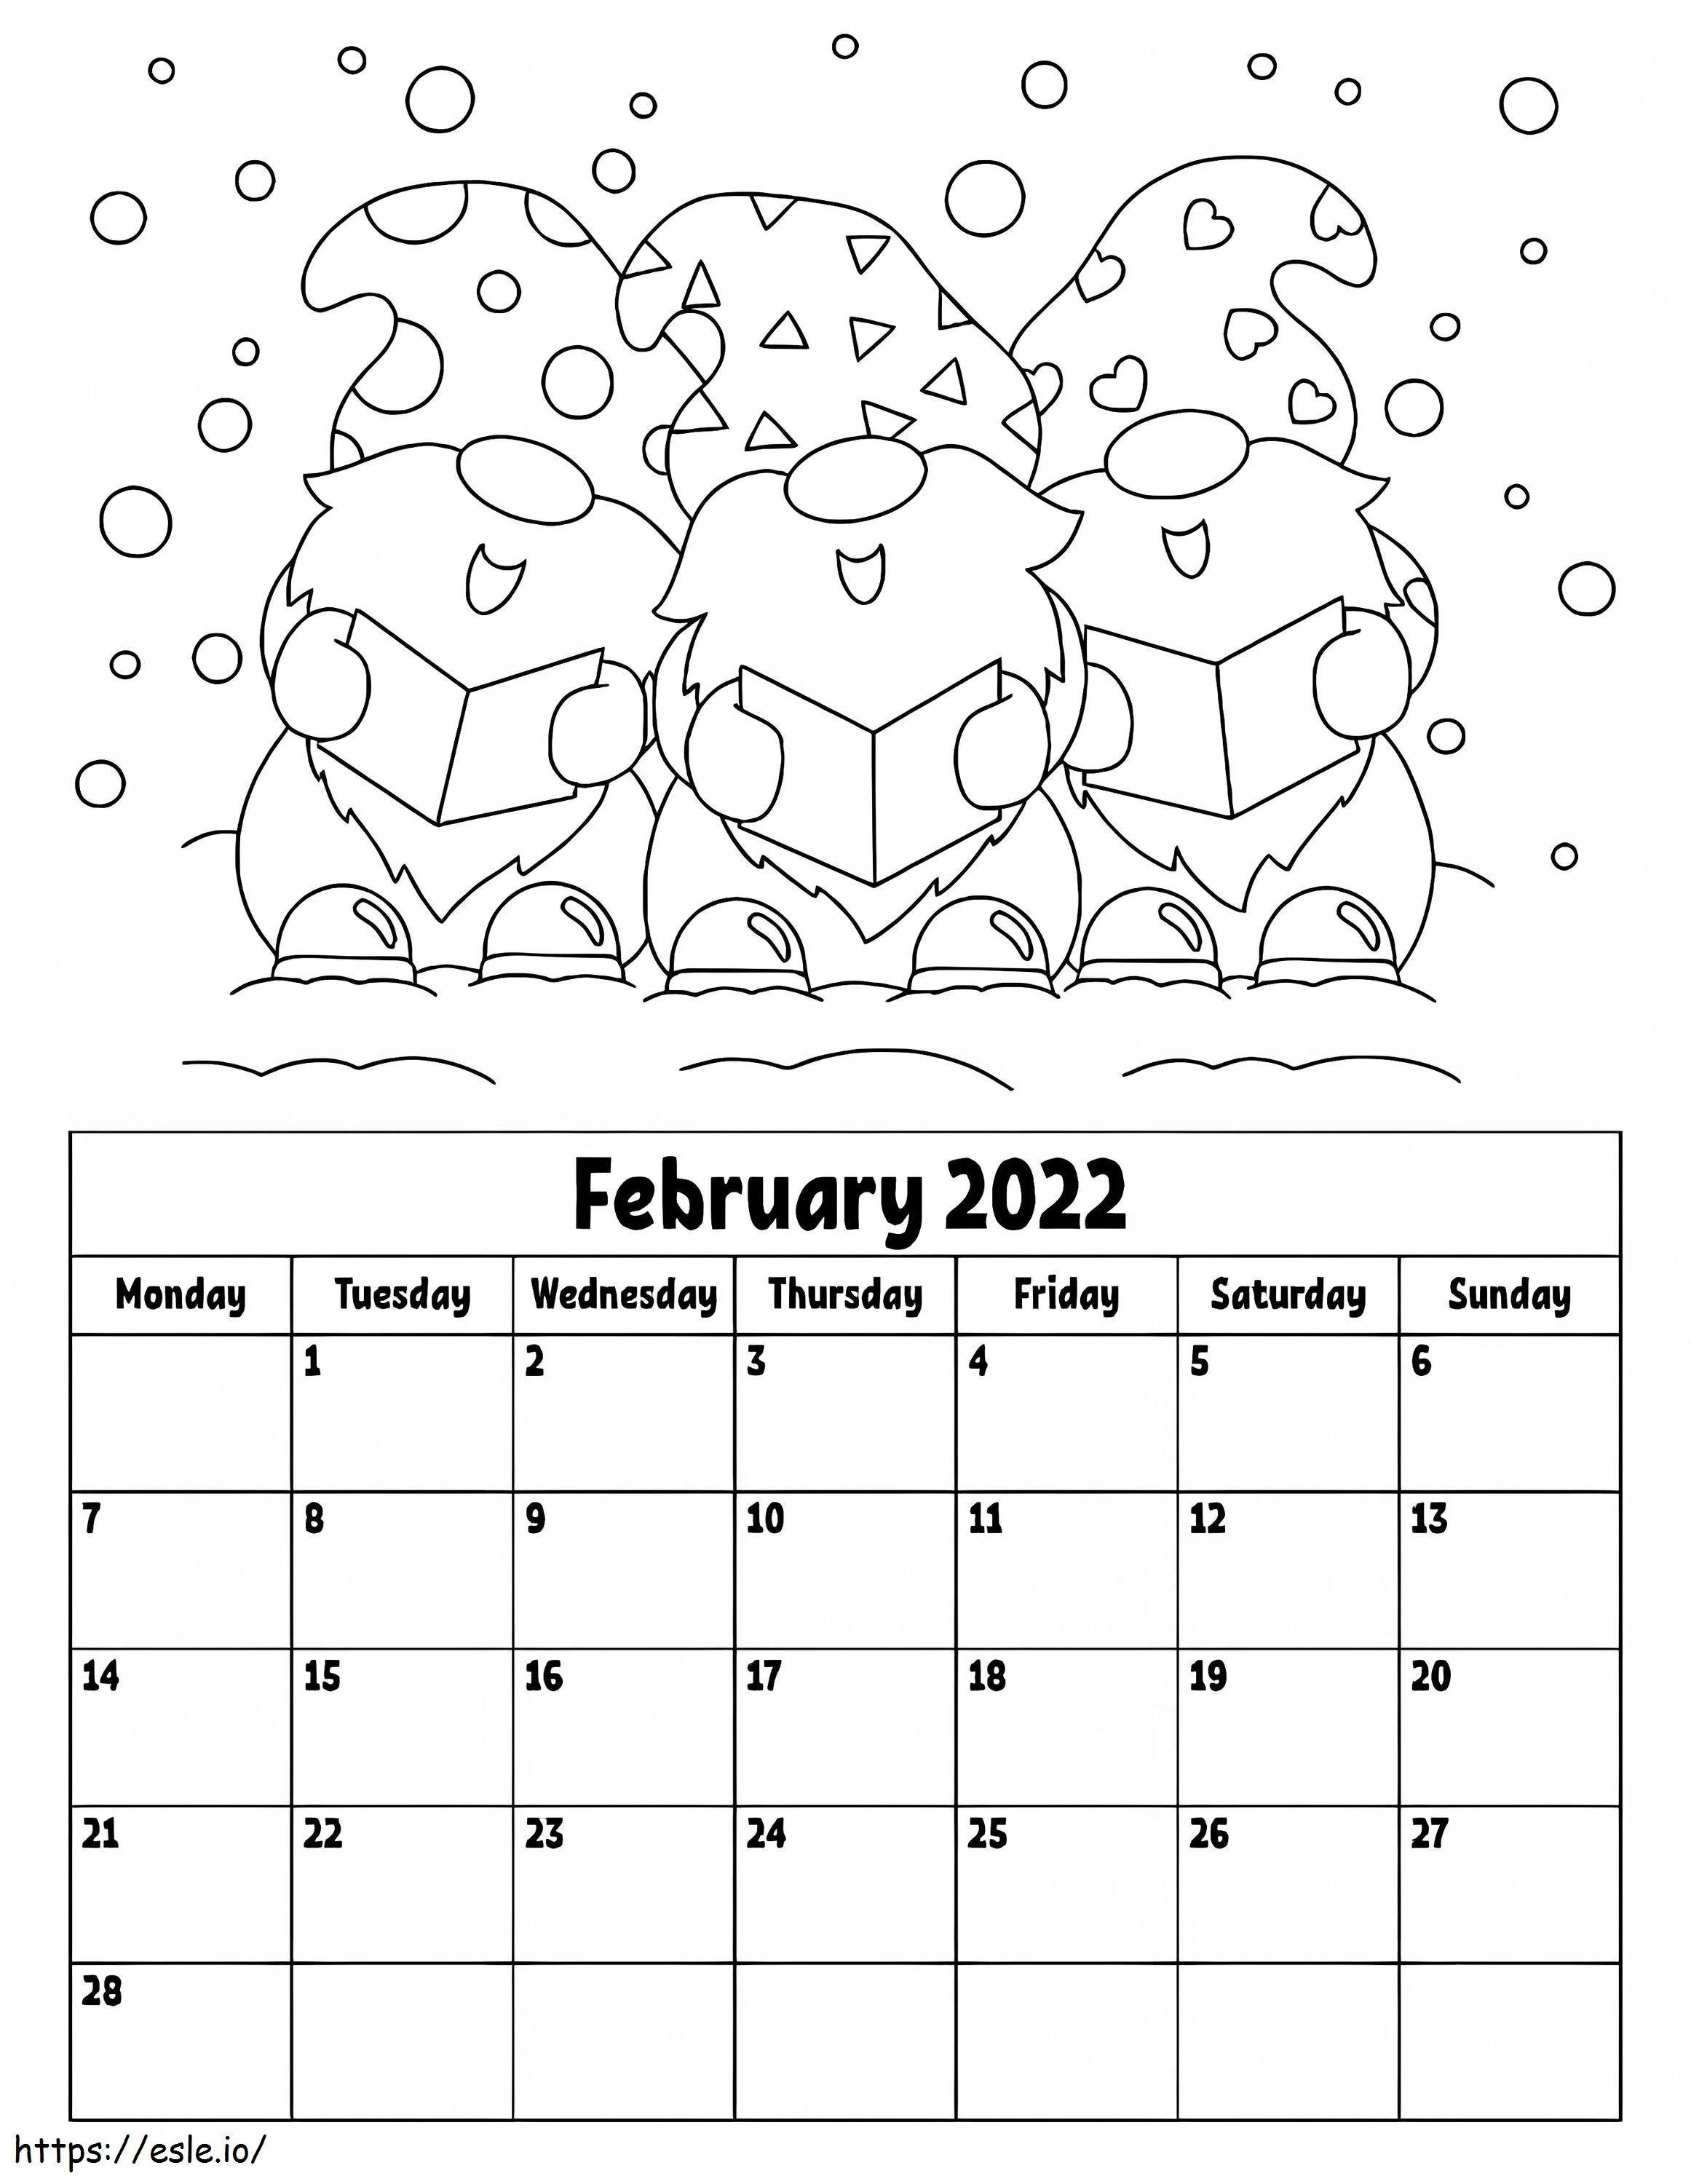 Calendário de fevereiro de 2022 para colorir